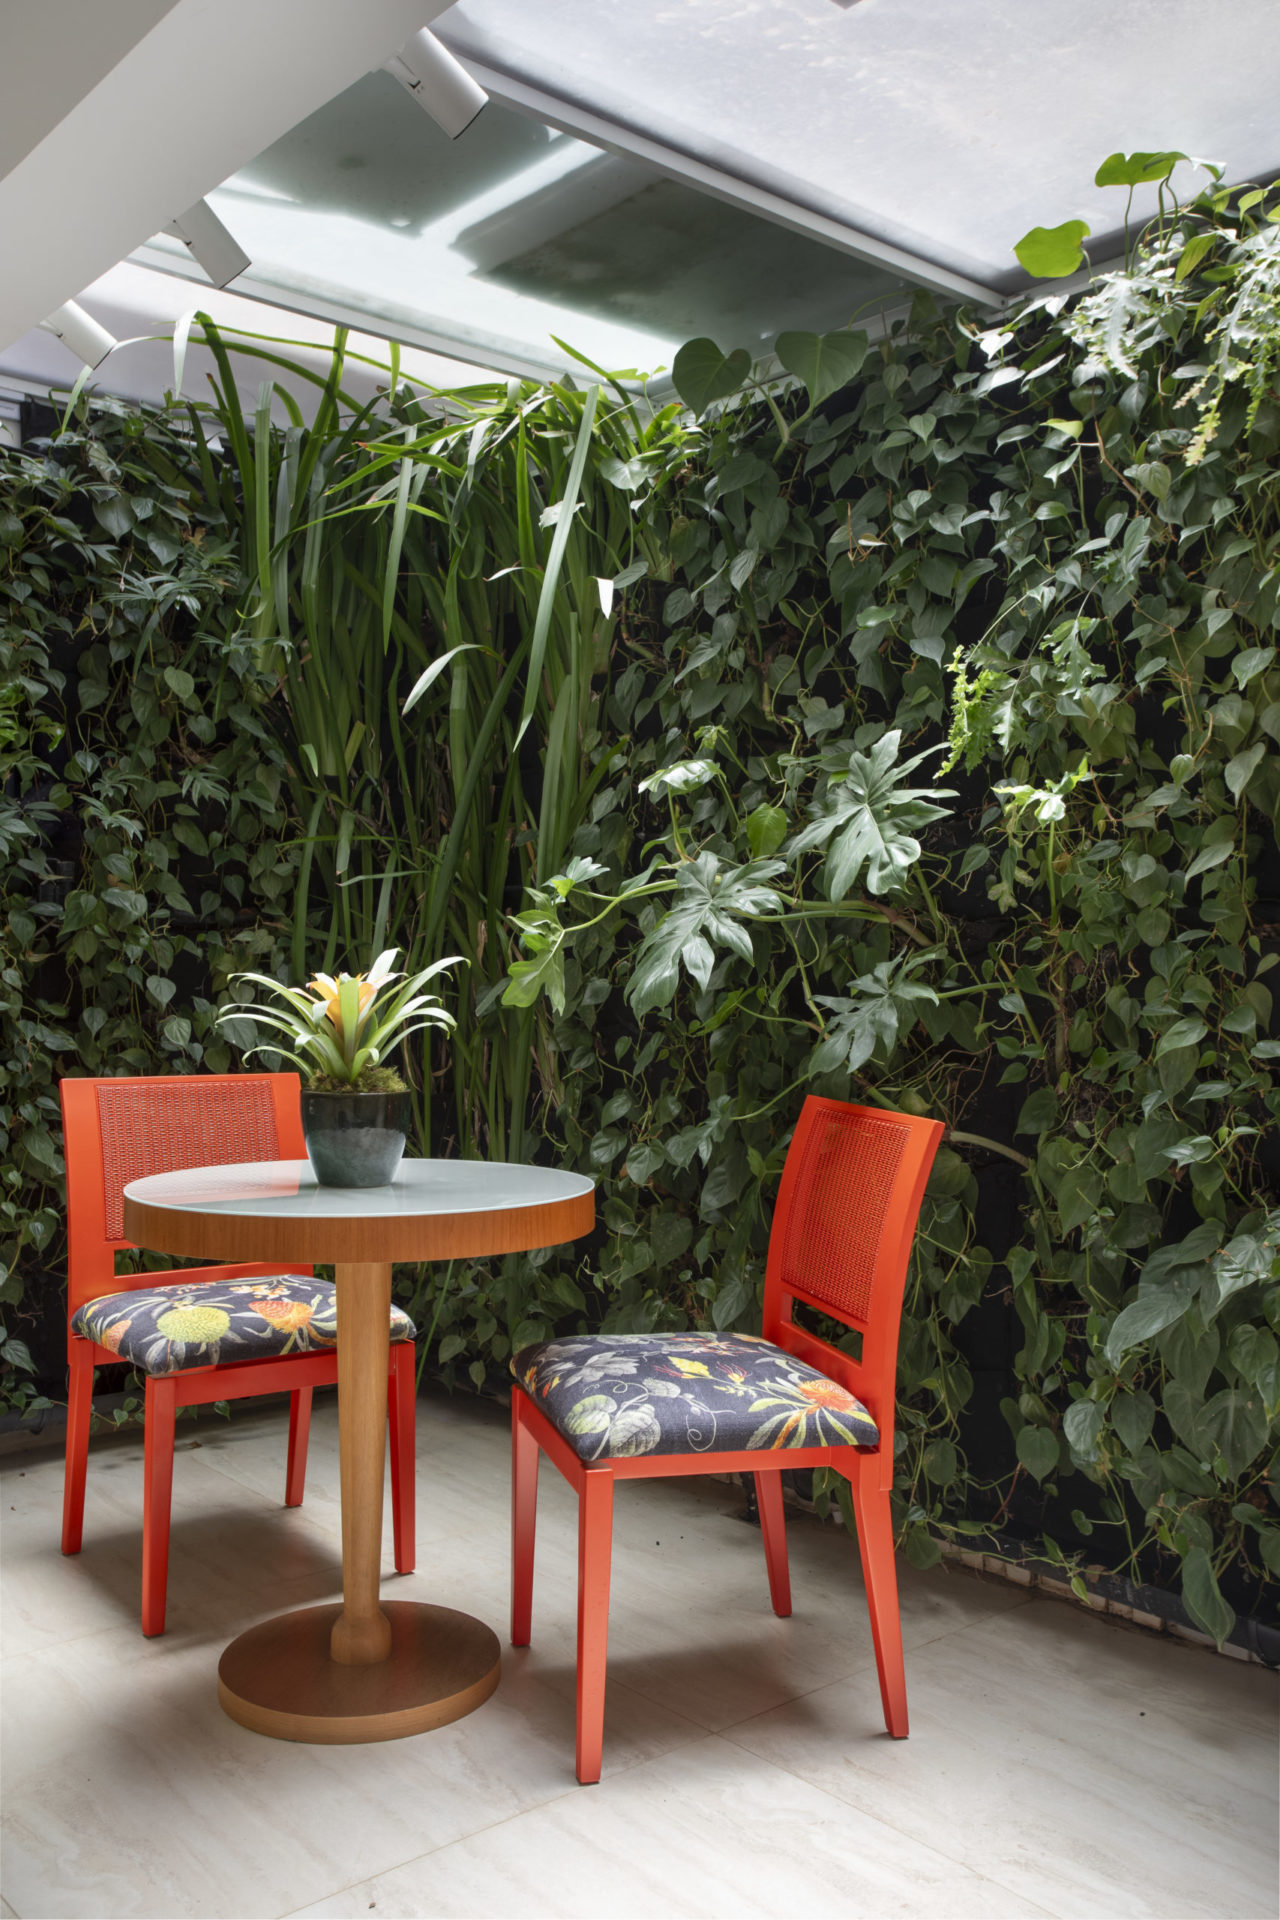 Uma parede verde, uma mesinha e duas cadeiras laranjas, no espçao da cozinha e da área de serviço.